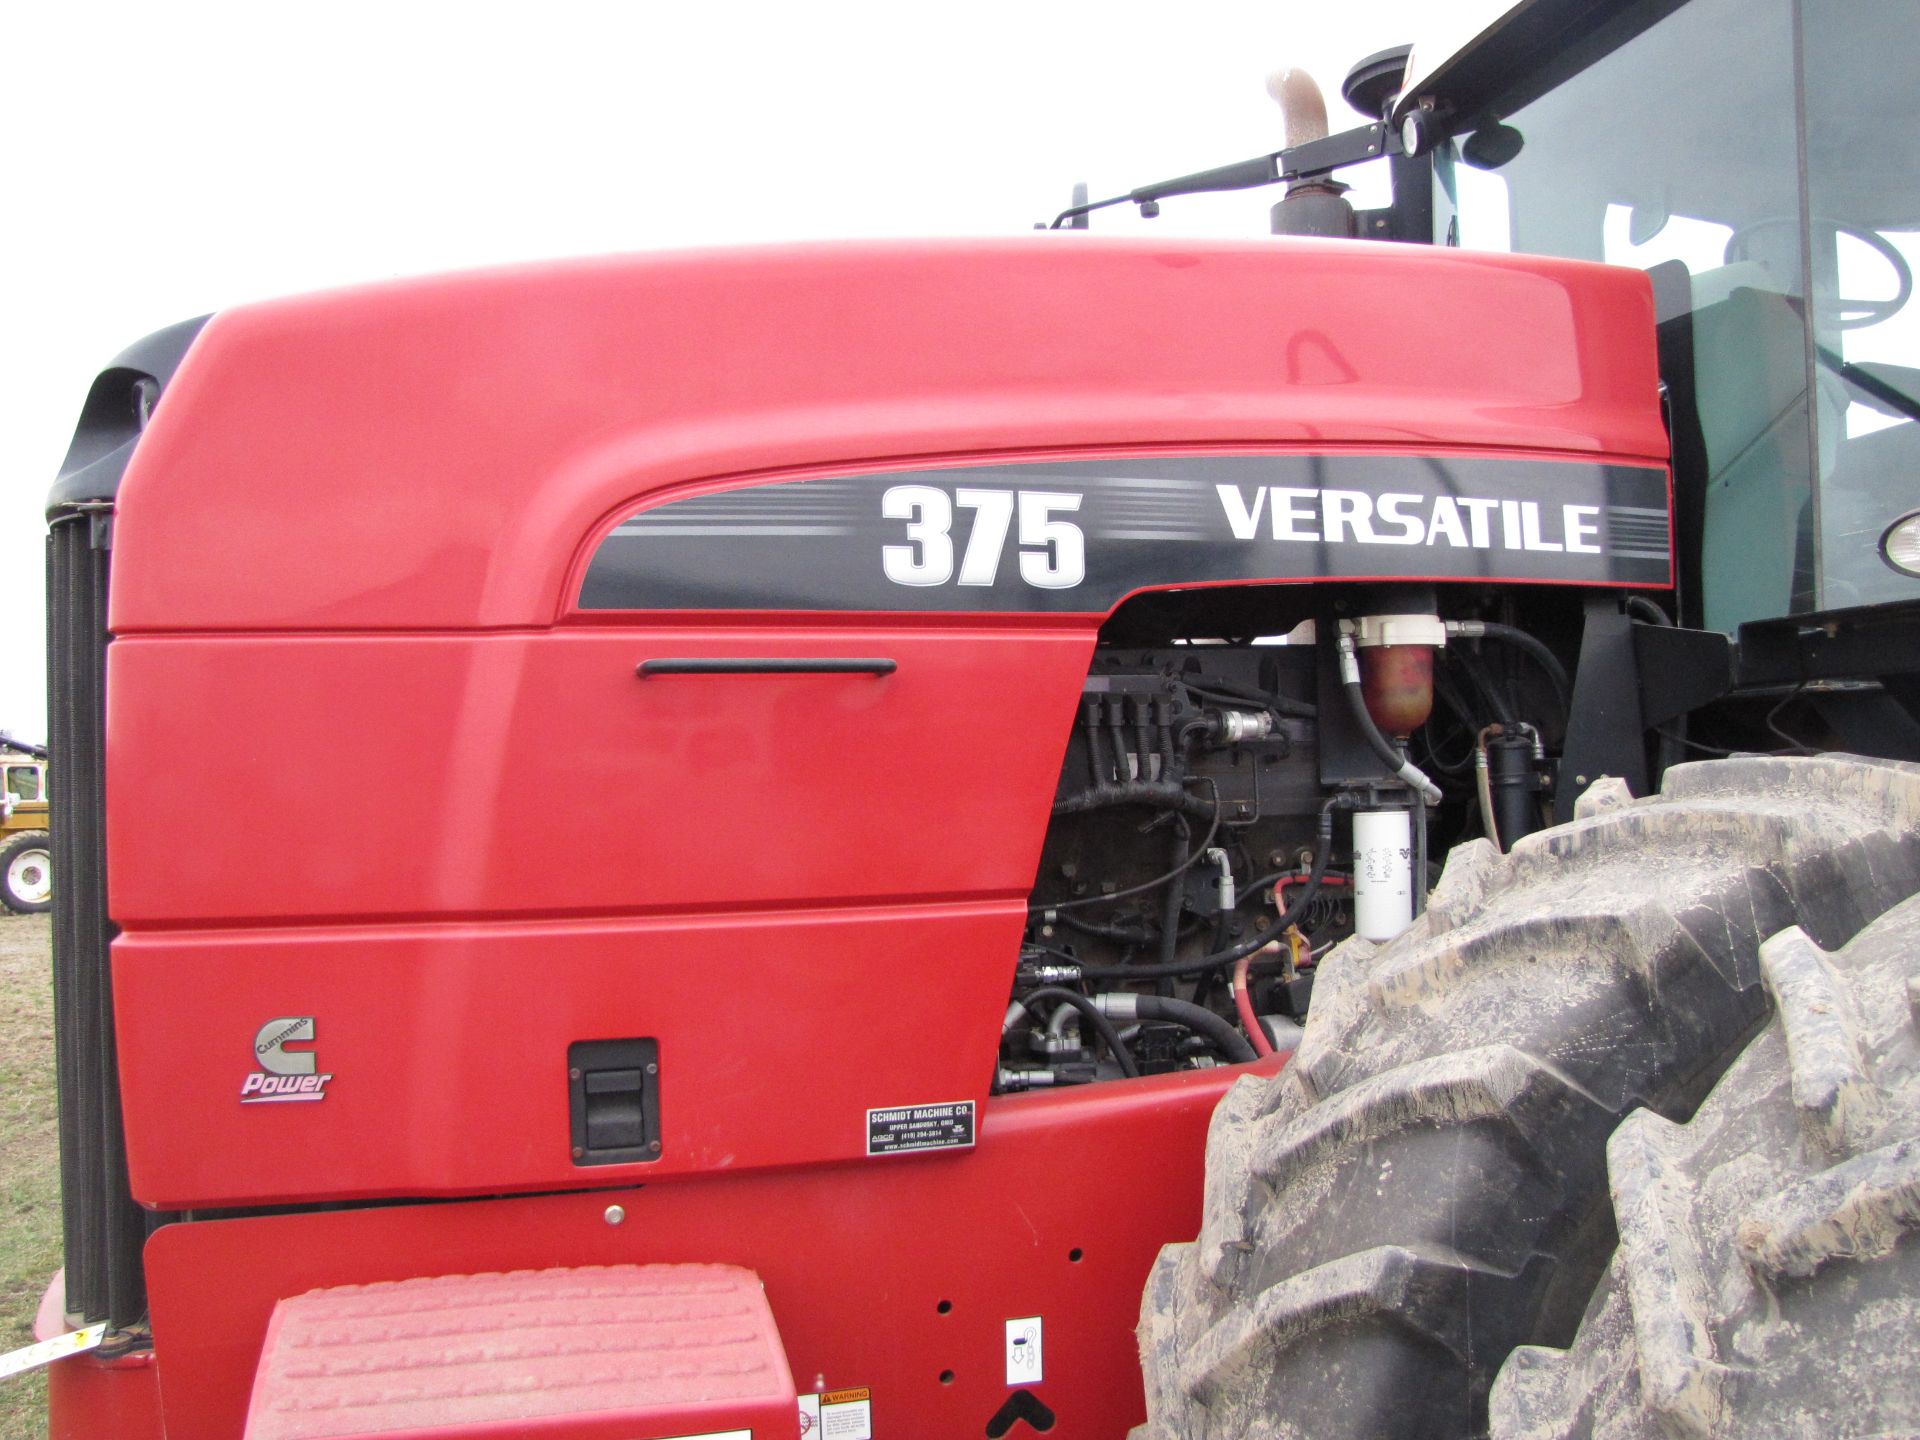 Versatile 375 Tractor - Image 10 of 47